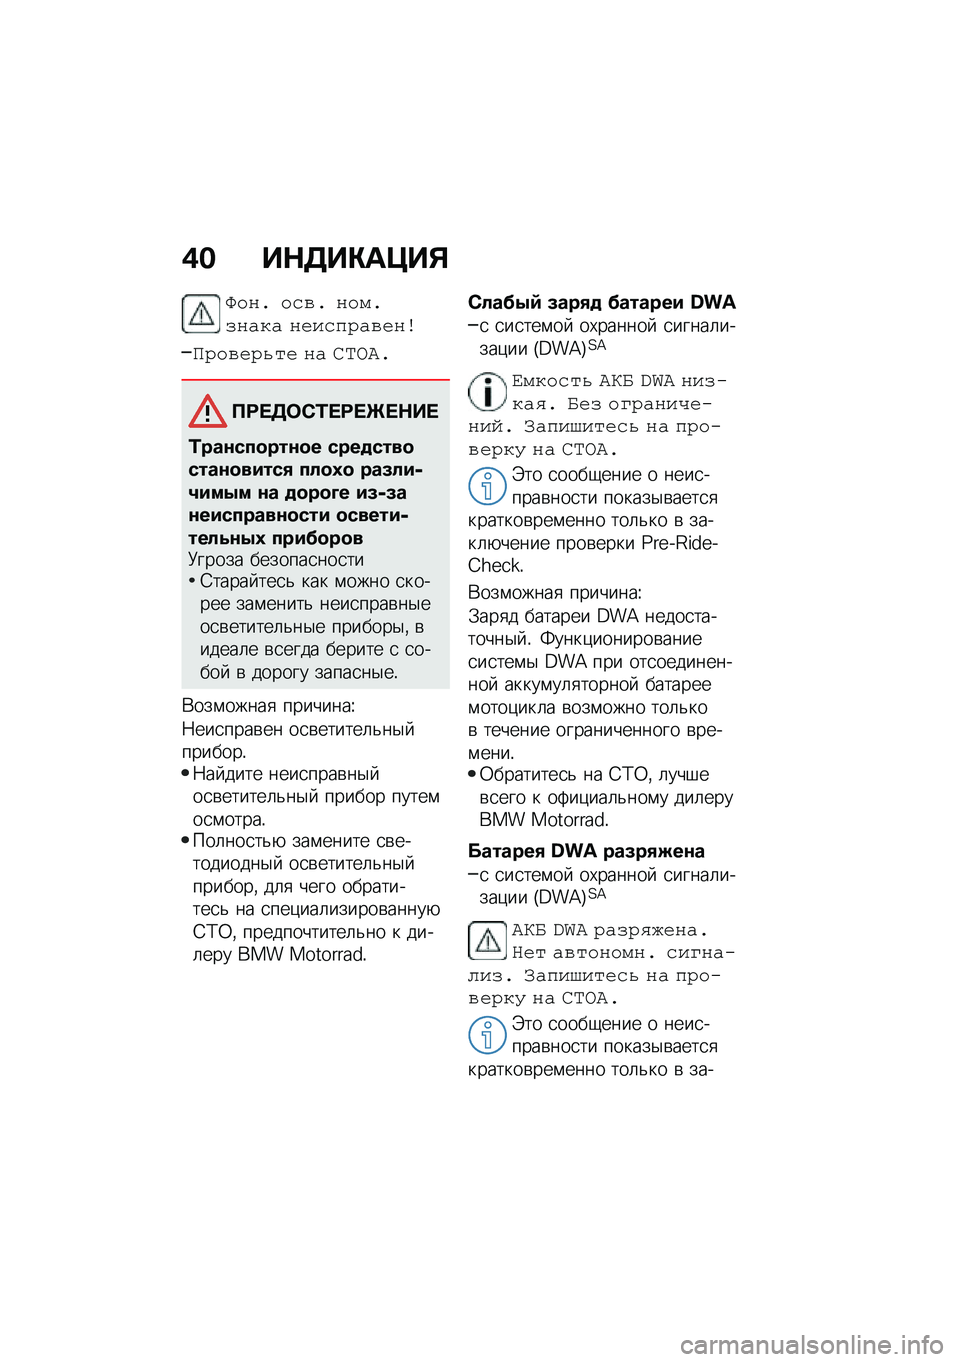 BMW MOTORRAD F 850 GS 2021  Руководство по эксплуатации (in Russian) �(� ��$�3��"��=��%
�S��#�+ ��(�&�+ �#���+��#��� �#�$��(�3�4��&�$�#�\b
�L�4��&�$�4�;��$ �#� �I�C�,�<�+
�?�:� �3�	�)�/� �:� �b� �$�� 
�/���\f���
���\f�
� ����
����
���